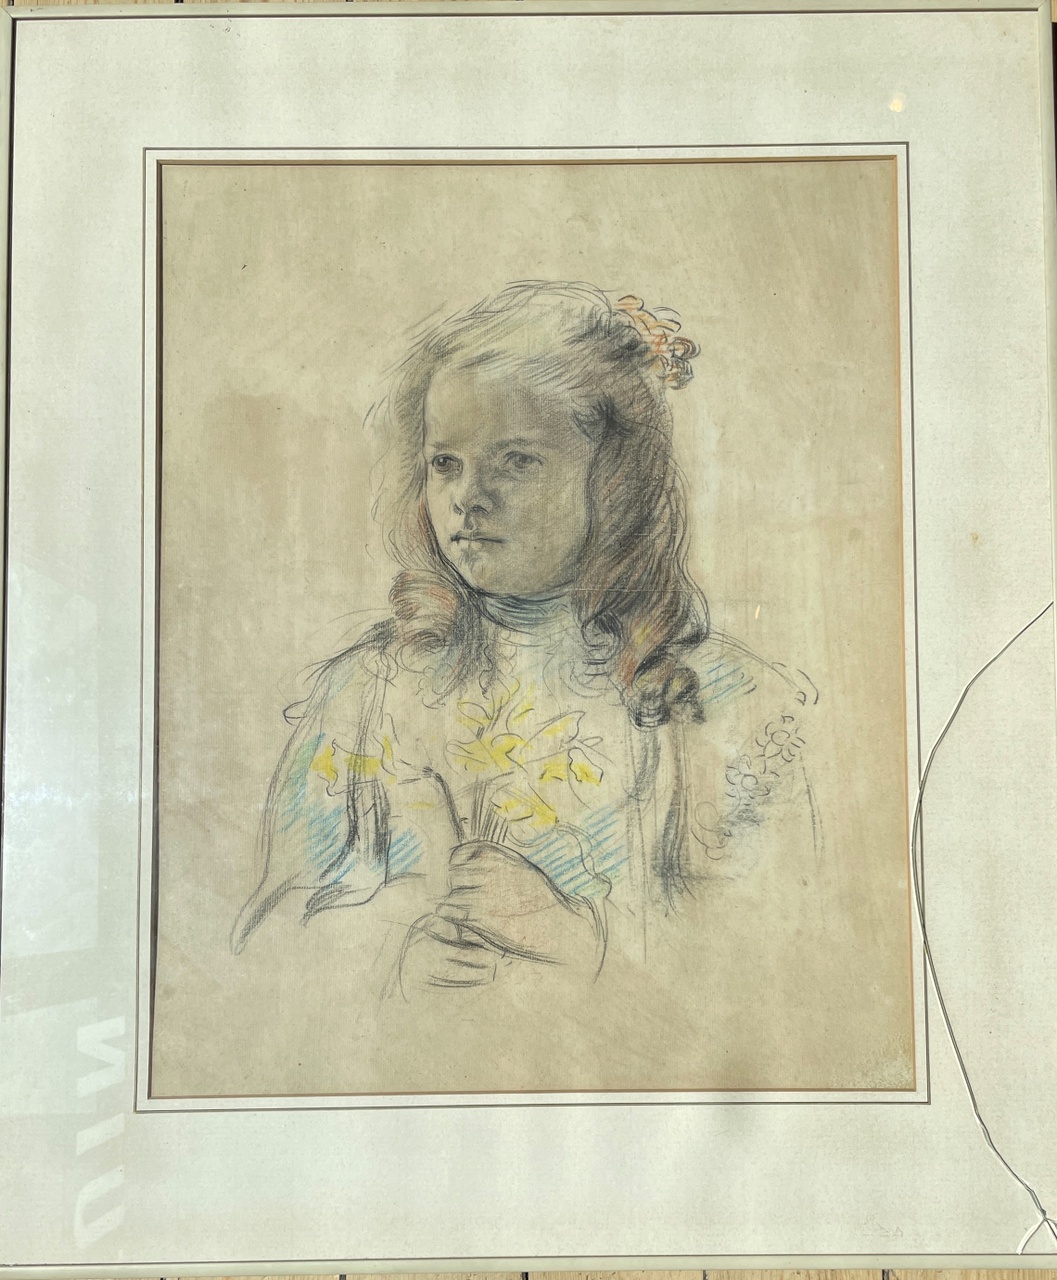 Portrettekening van Marguérite Cuypers, dochter van Joseph Cuypers en Delphine Cuypers-Povel